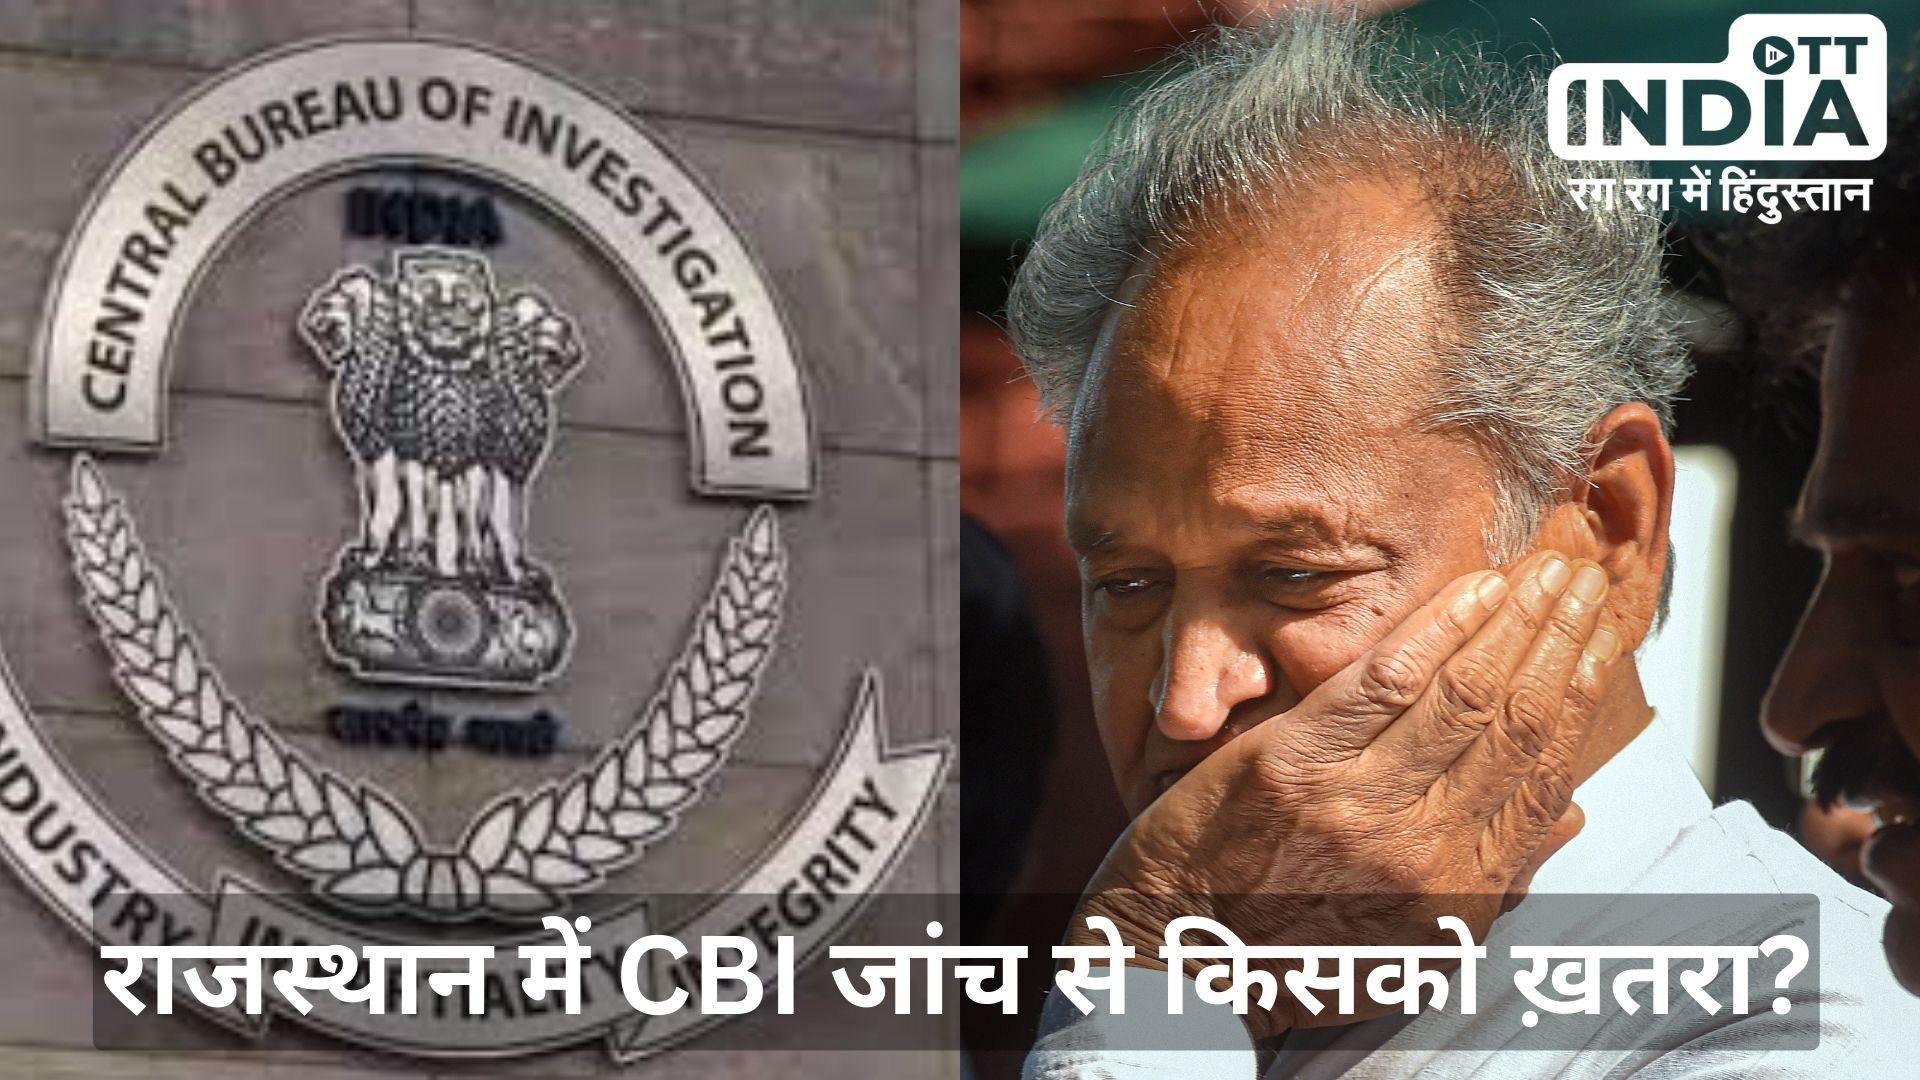 CBI Back in Rajasthan मुख्यमंत्री भजनलाल ने सीबीआई को दी राजस्थान में जांच की छूट, कांग्रेस को खतरा